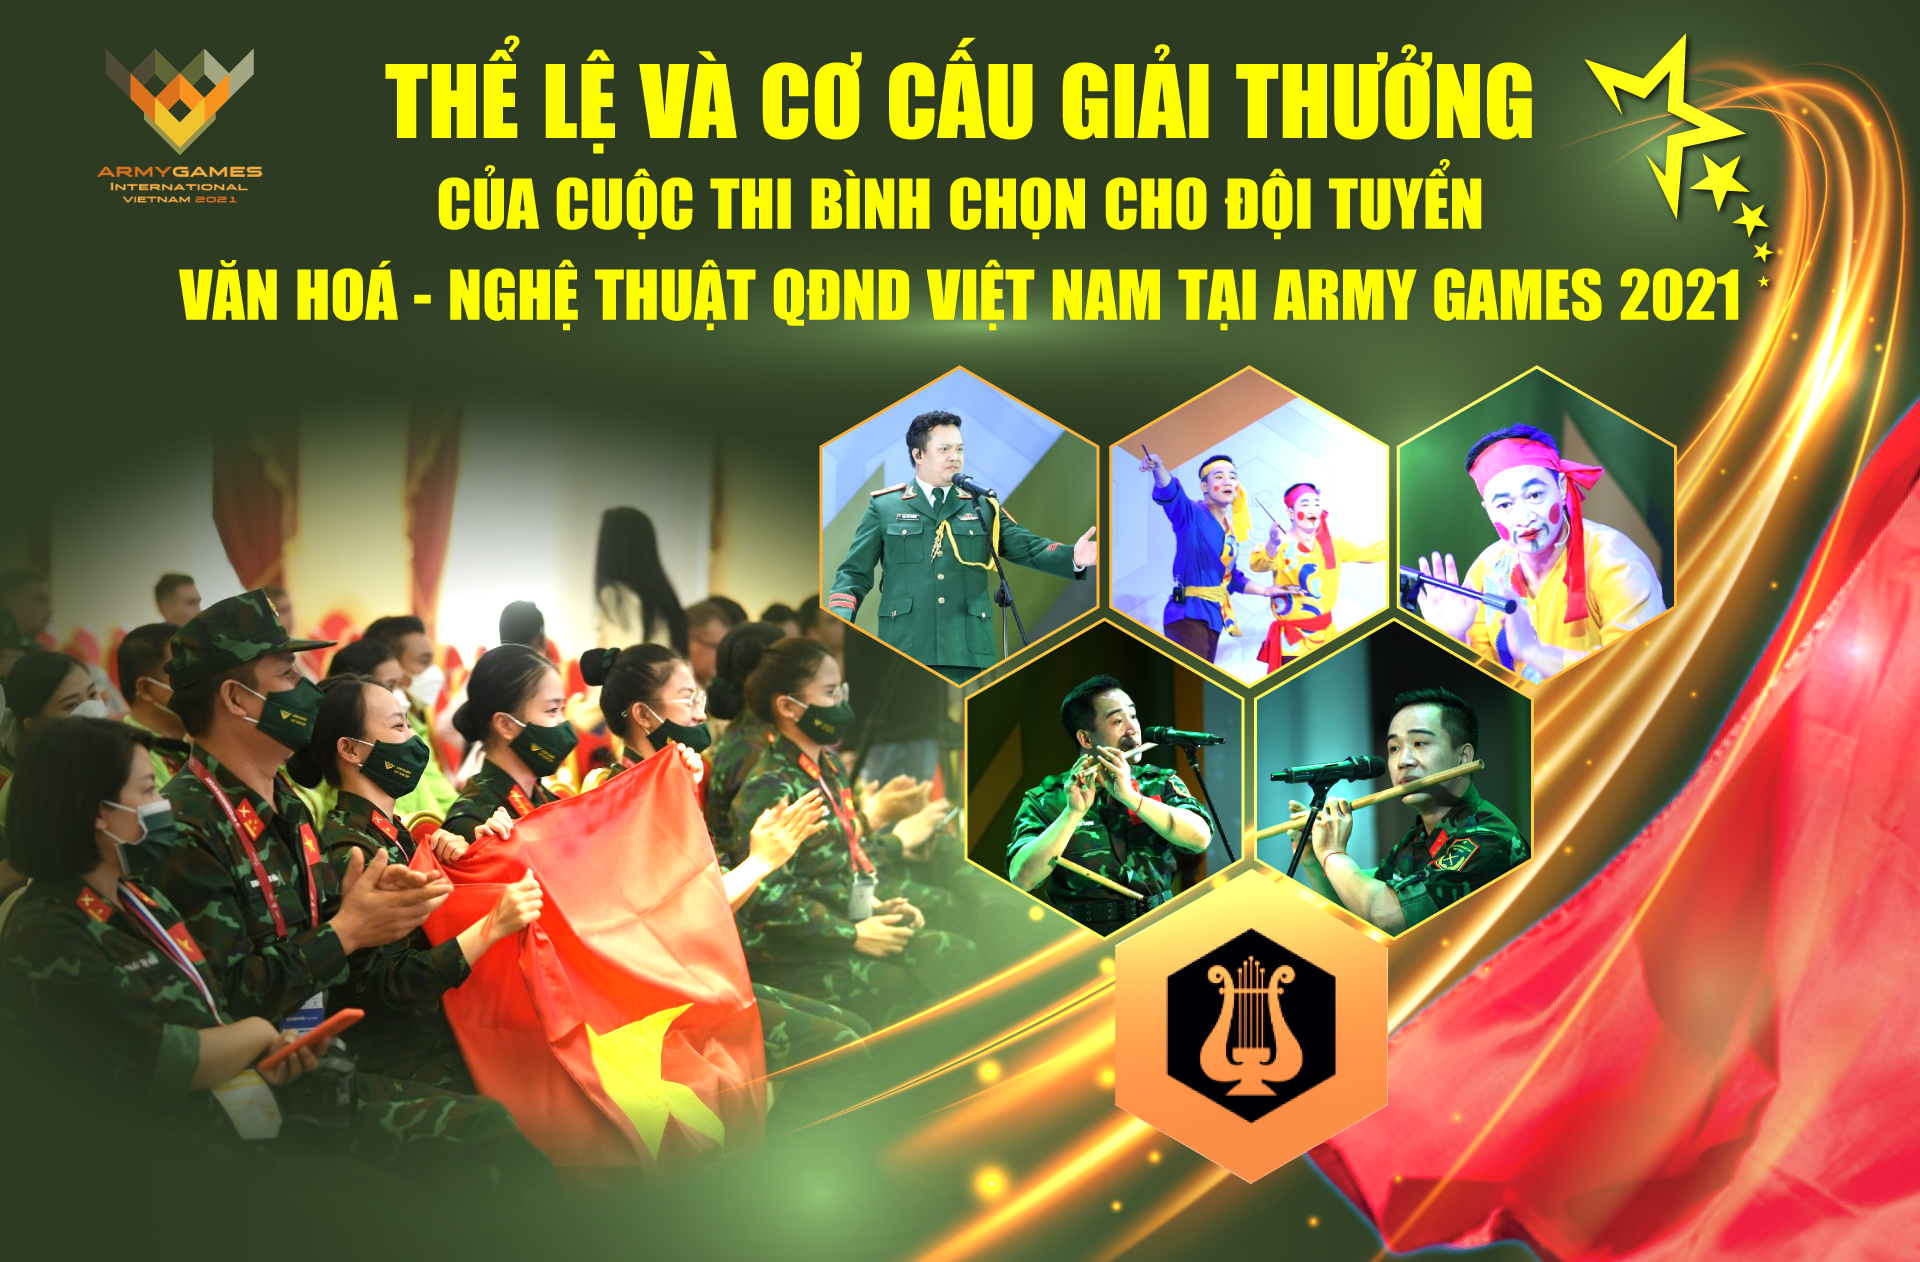 Thể lệ và giải thưởng của Cuộc thi bình chọn cho Đội tuyển Văn hóa- Nghệ thuật QĐND Việt Nam tại Army Games 2021